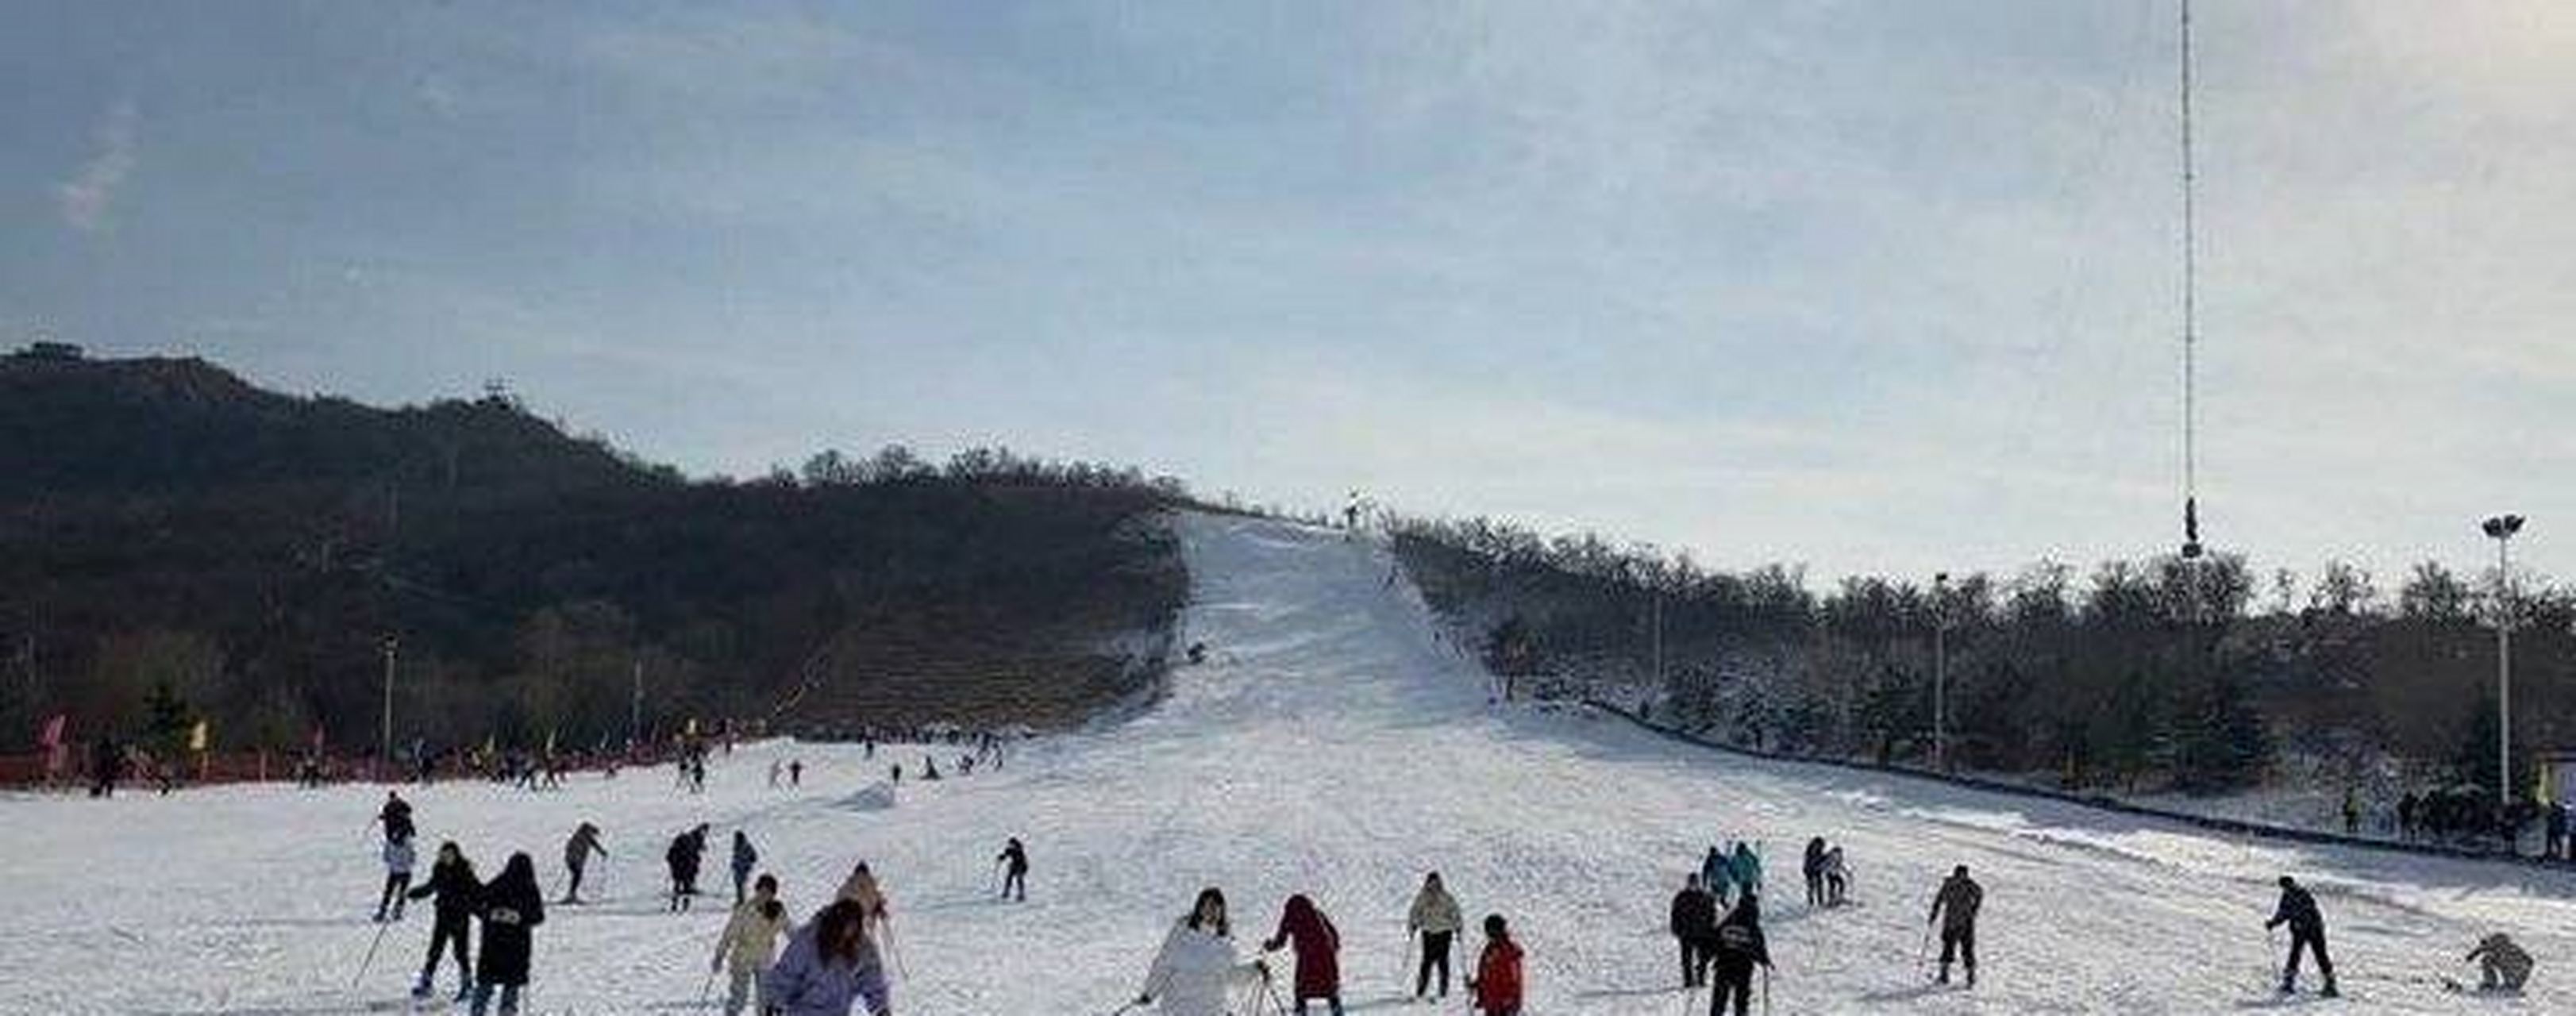 徂徕山滑雪场集户外滑雪,观光旅游,休闲度假,儿童戏雪为一体,配有滑雪